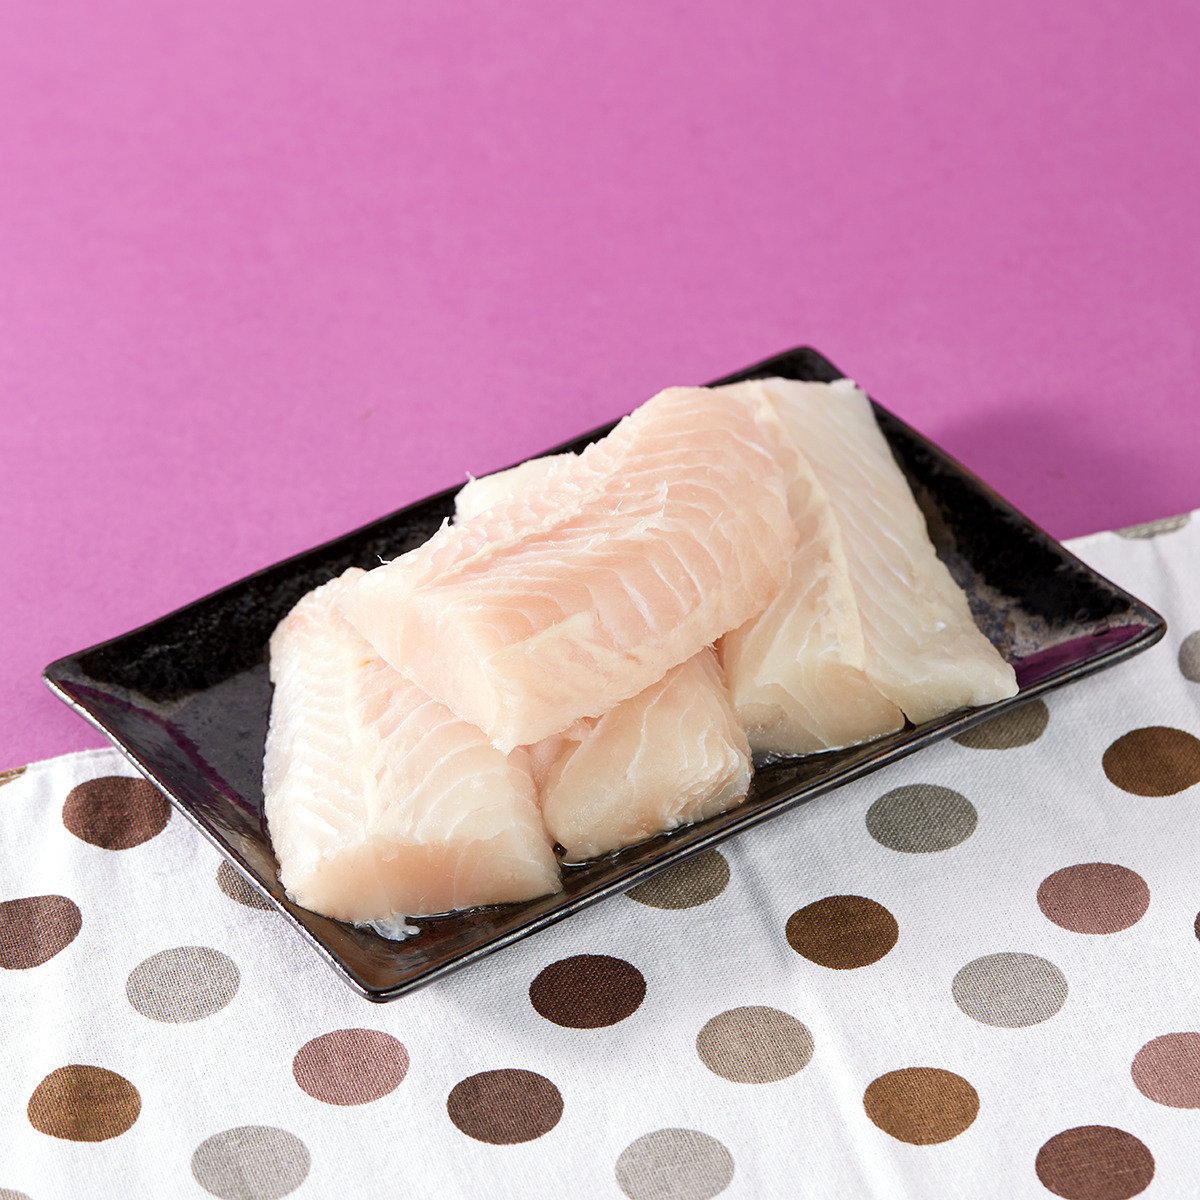 紐西蘭 Hoki 鱈魚柳 (MSC 可持續海產品)(急凍-18°C)#海鮮#氣炸